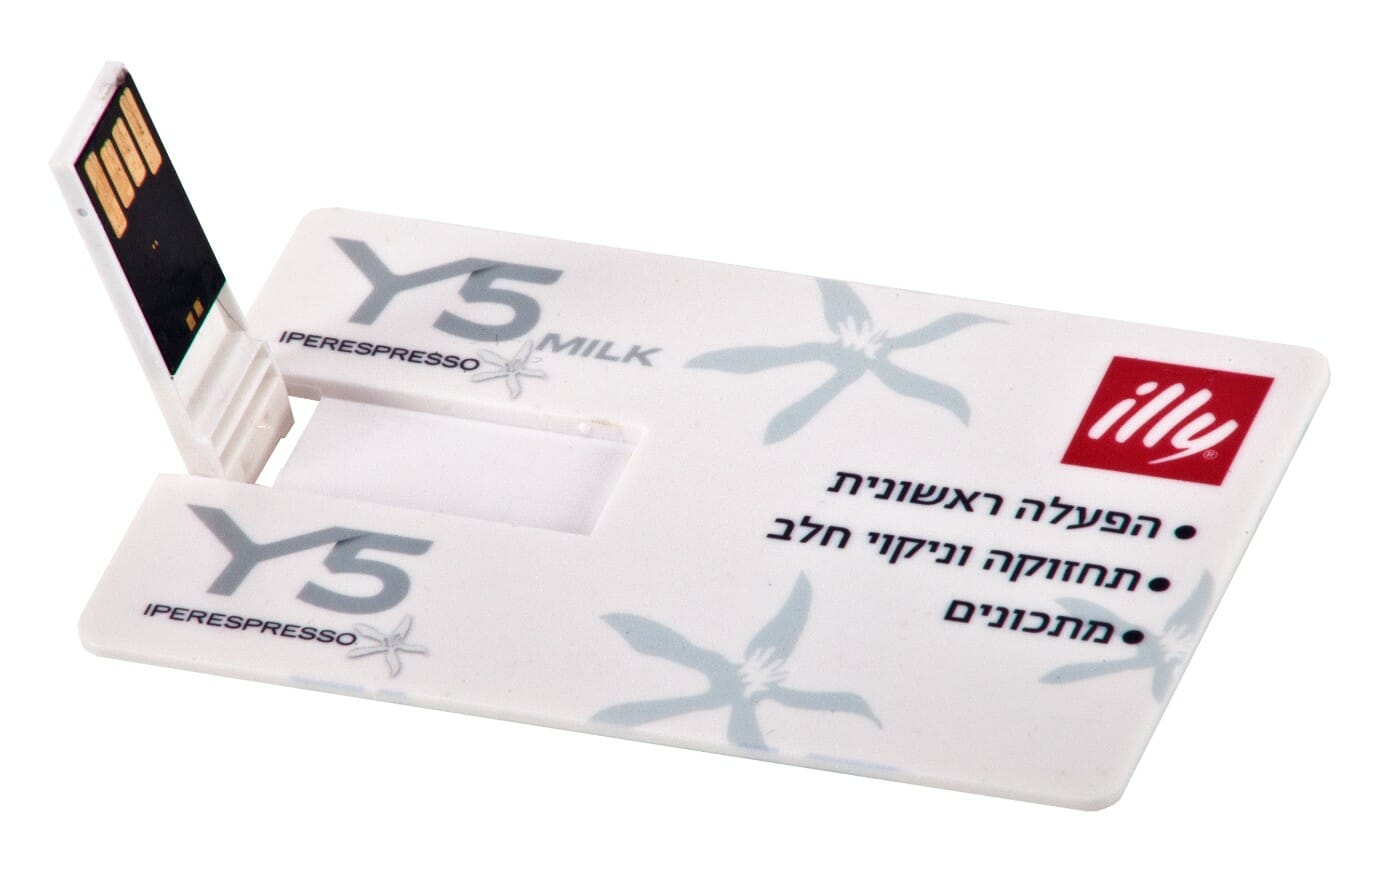 דיסק און קי בצורת כרטיס אשראי